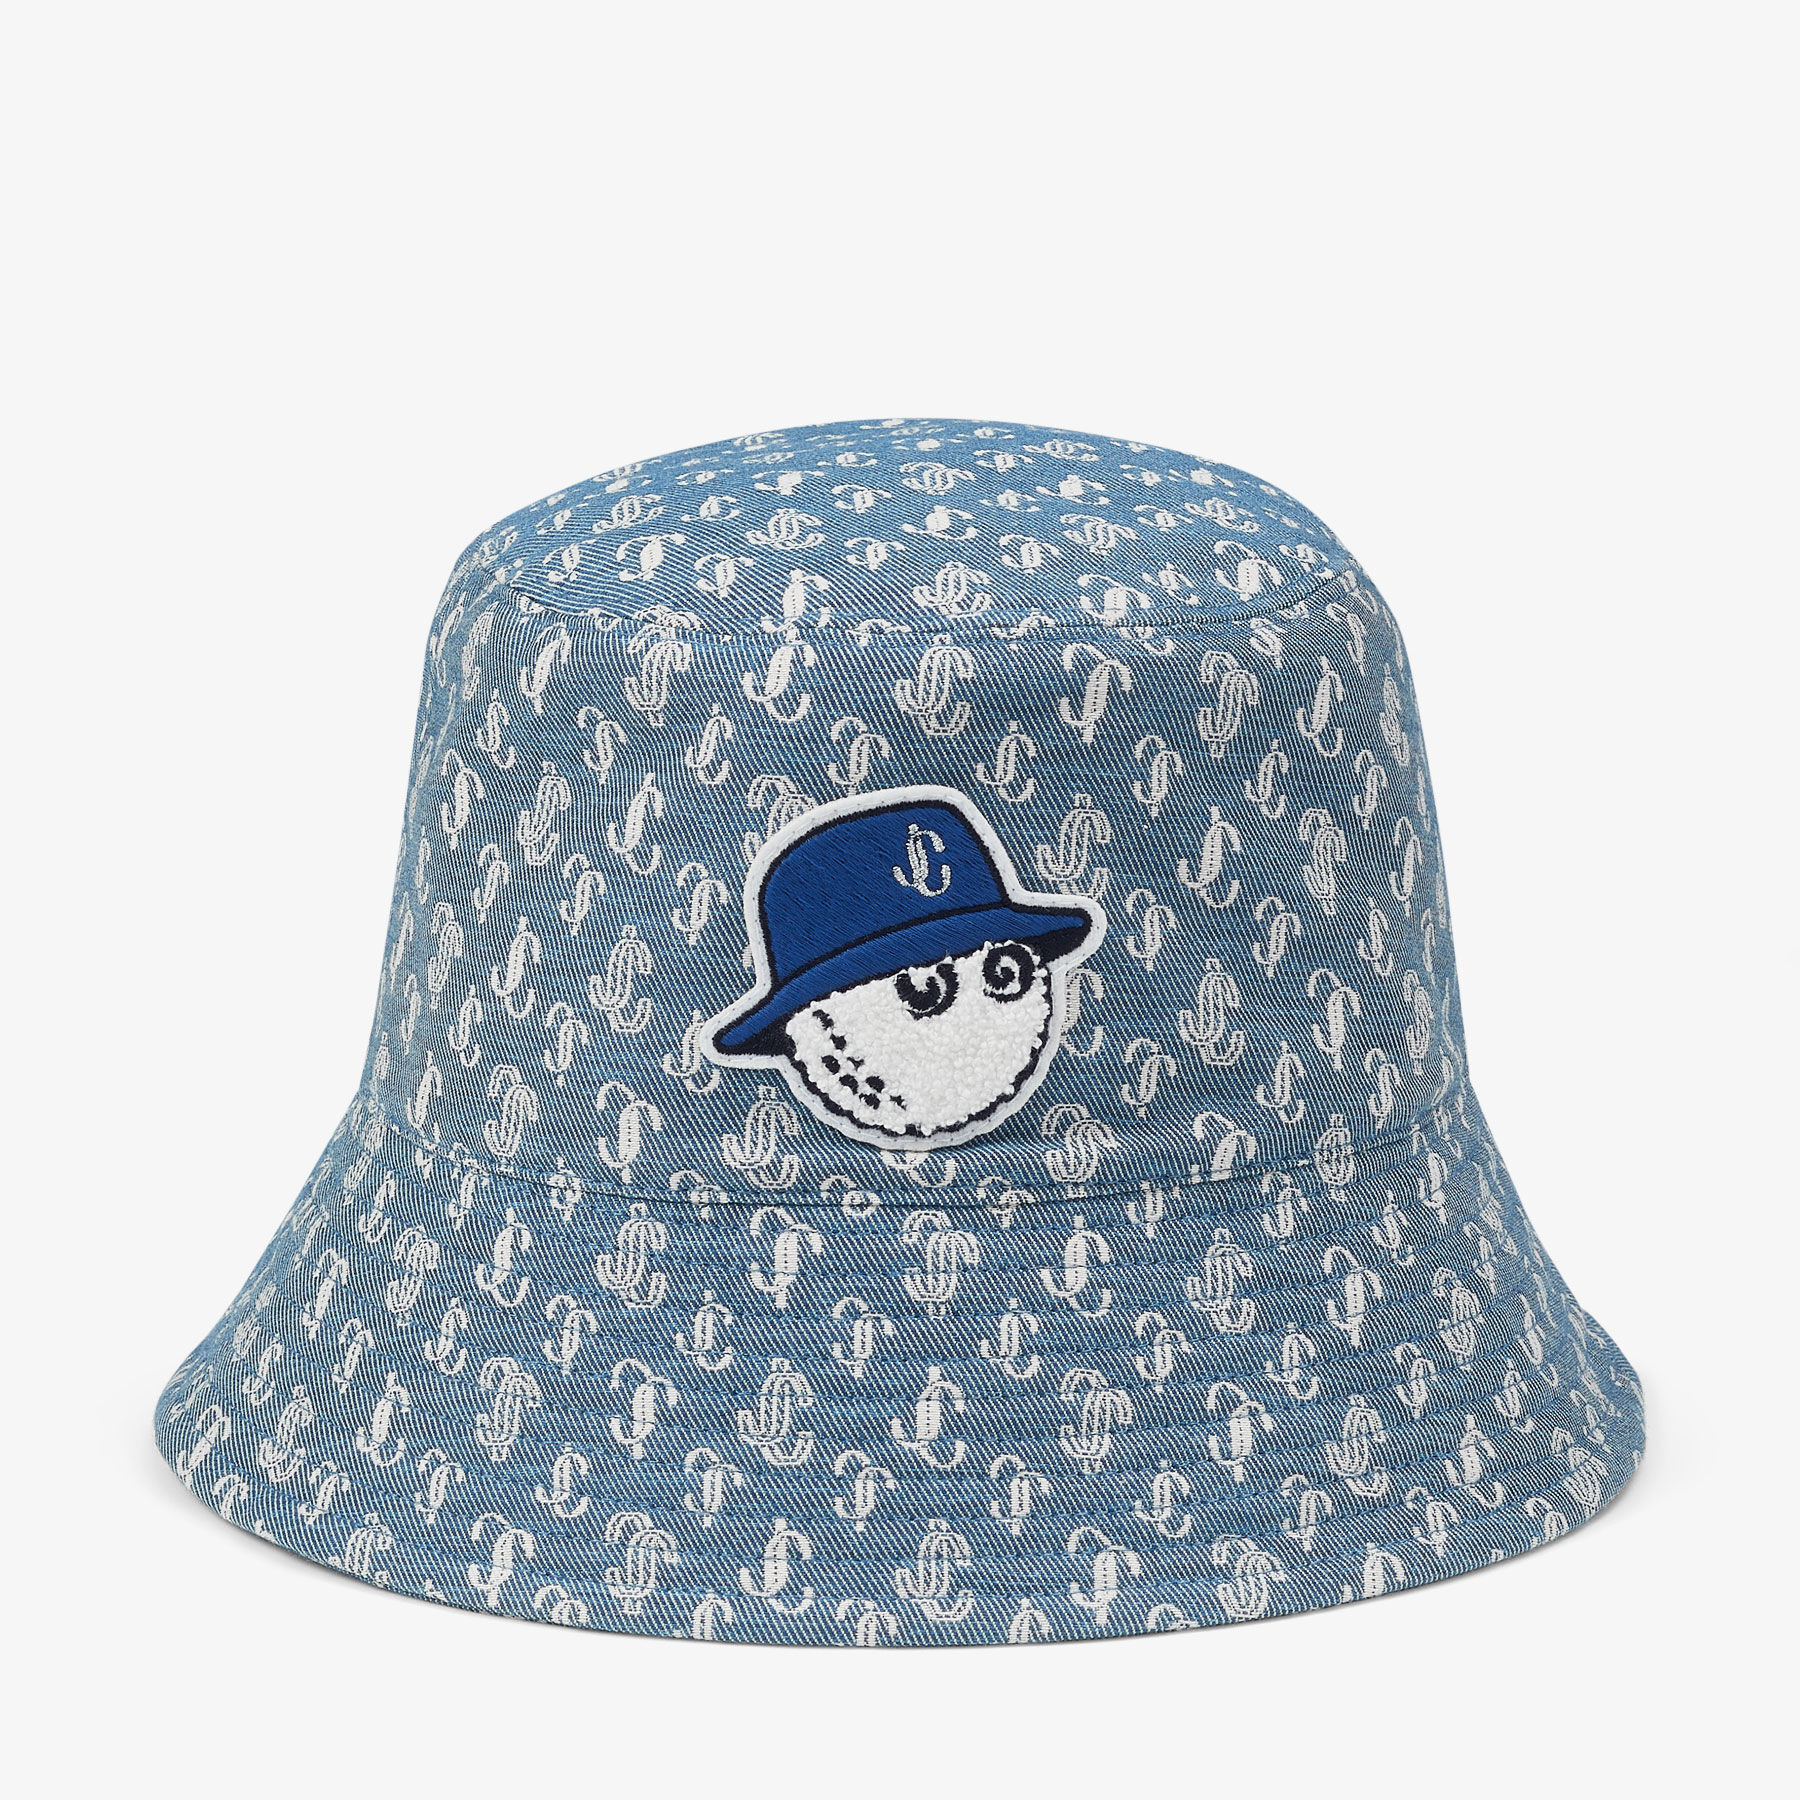 Jimmy Choo / Malbon Bucket Hat | ロゴ柄デニム・バケットハット 